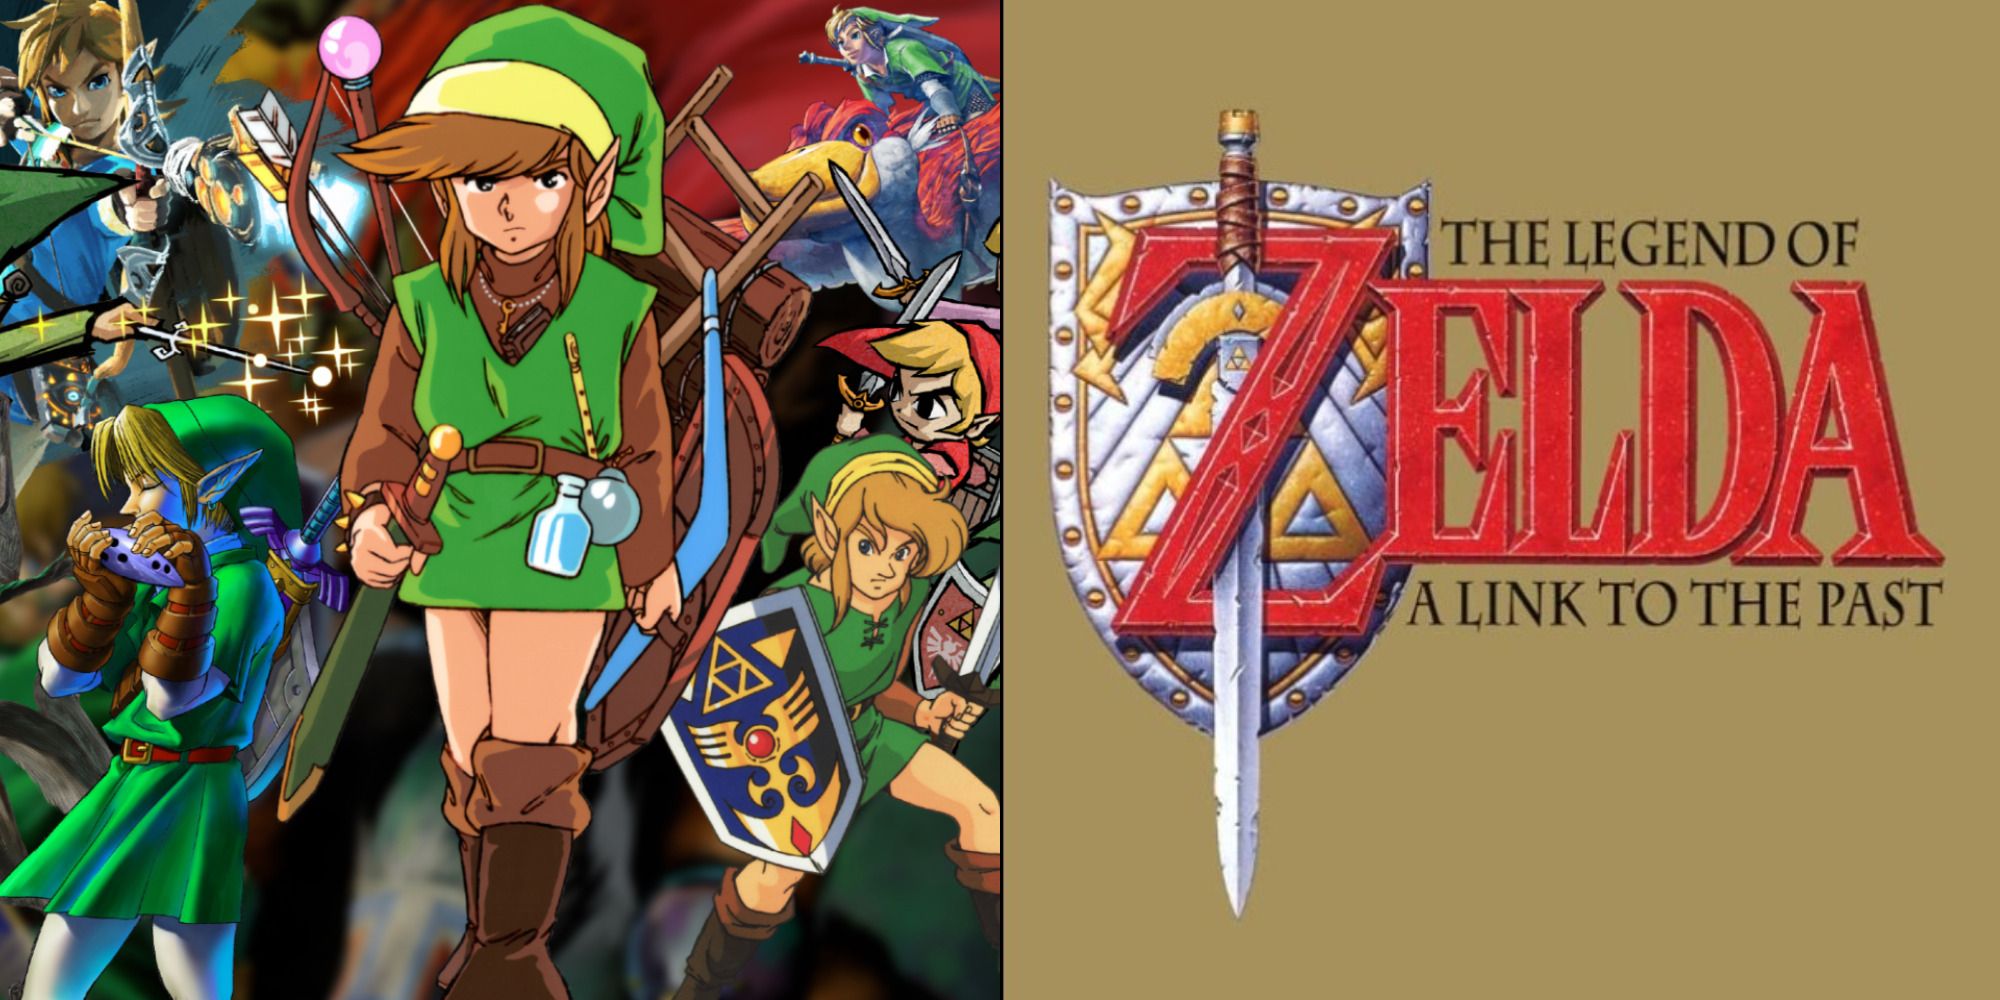 Ocarina of Time 2D Update Adds Online Multiplayer - Zelda Dungeon